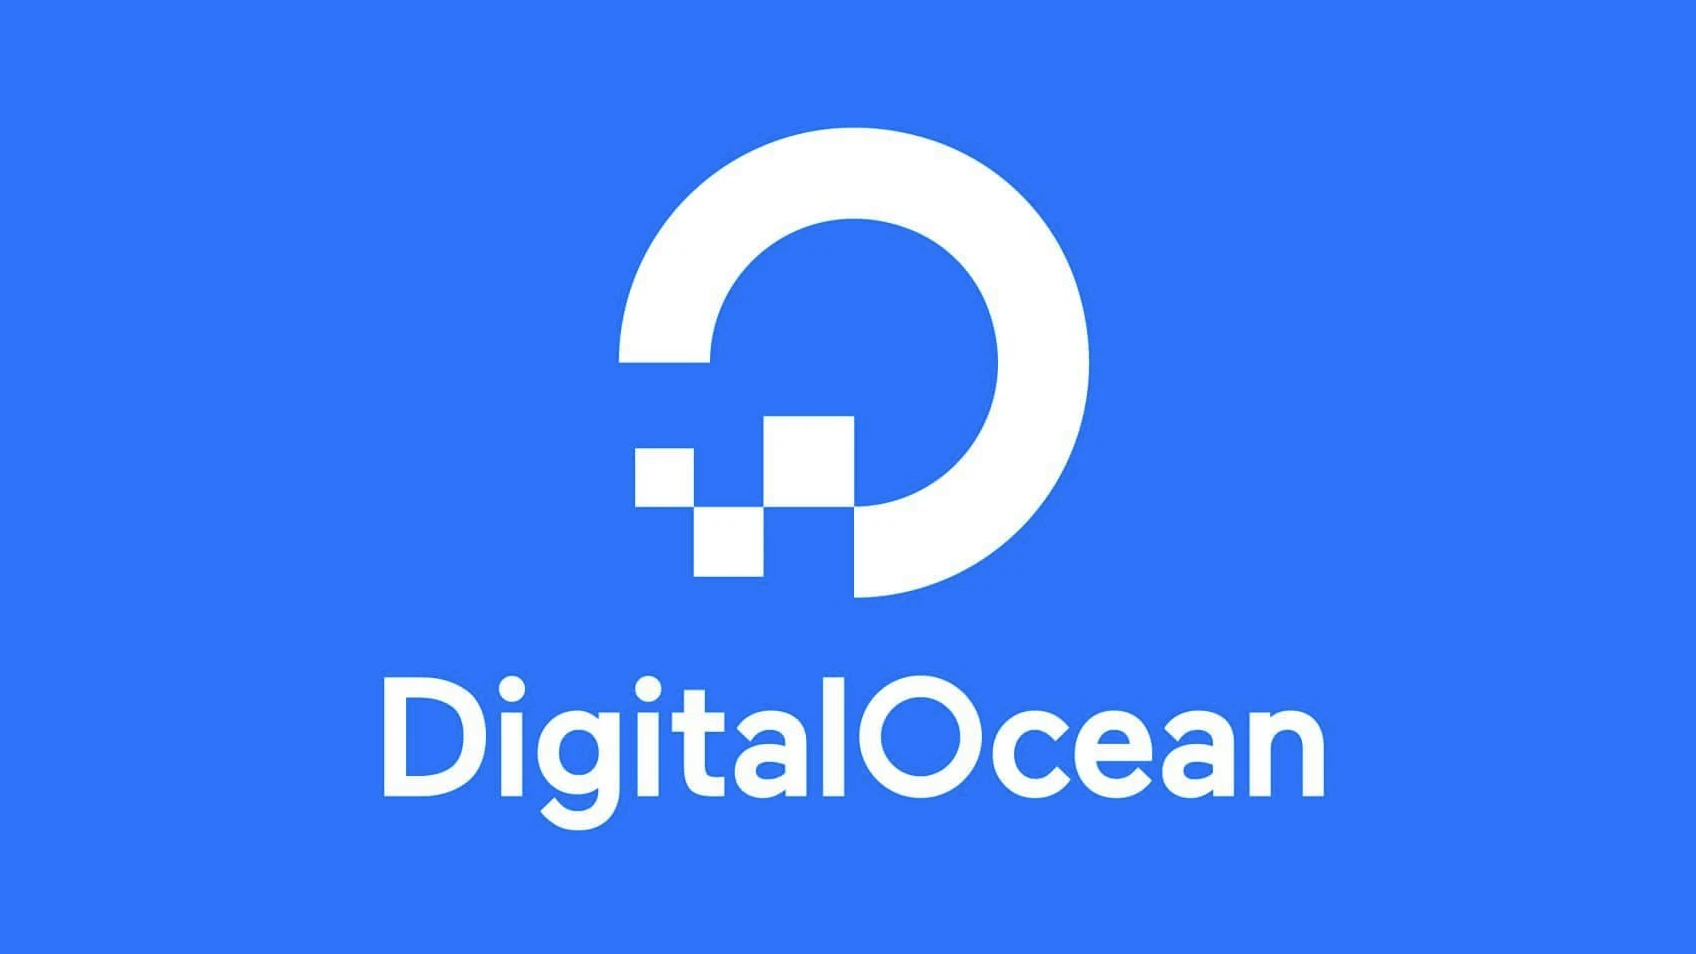 Digital Ocean Review